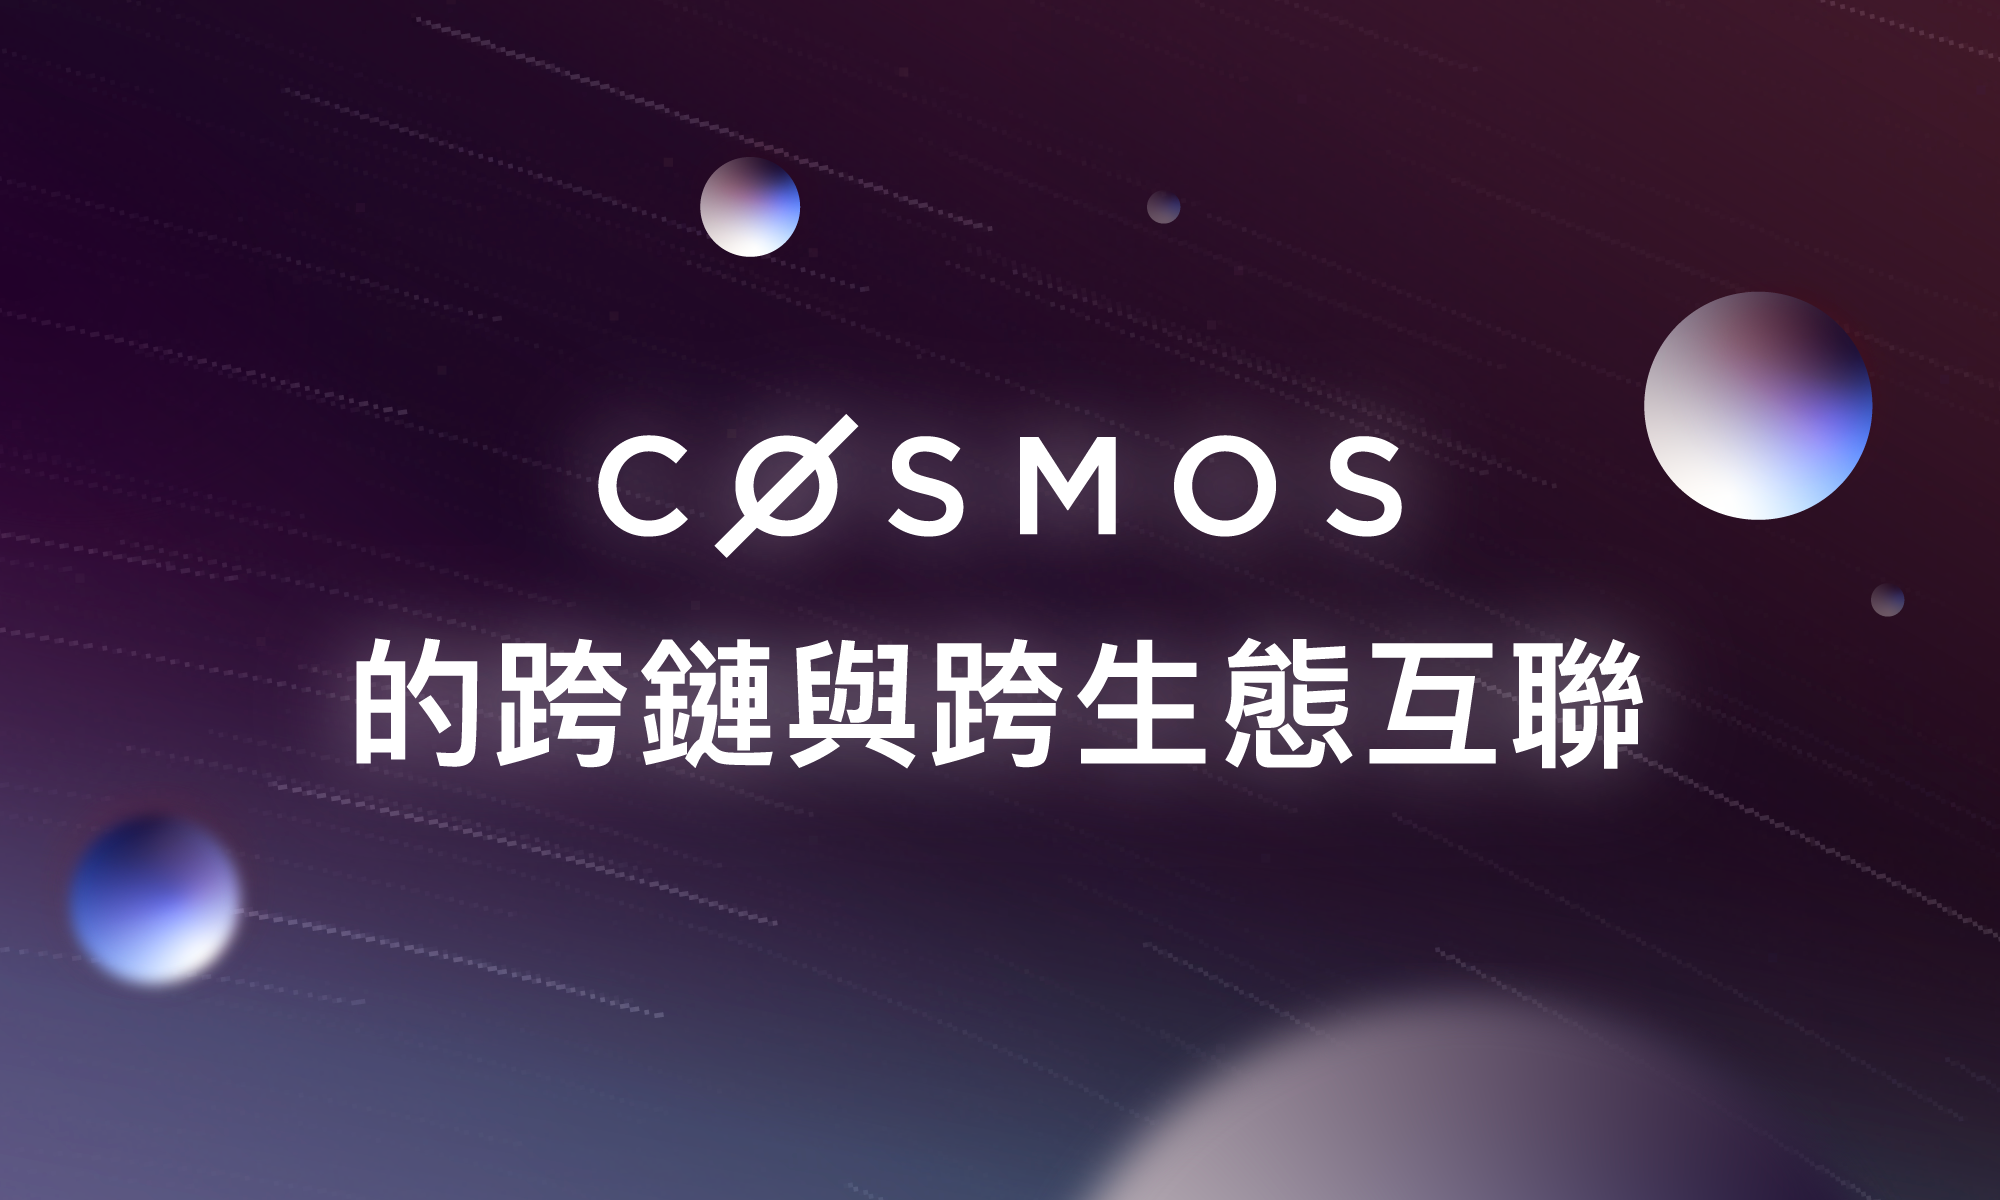 Cosmos 的跨鏈與跨生態互聯